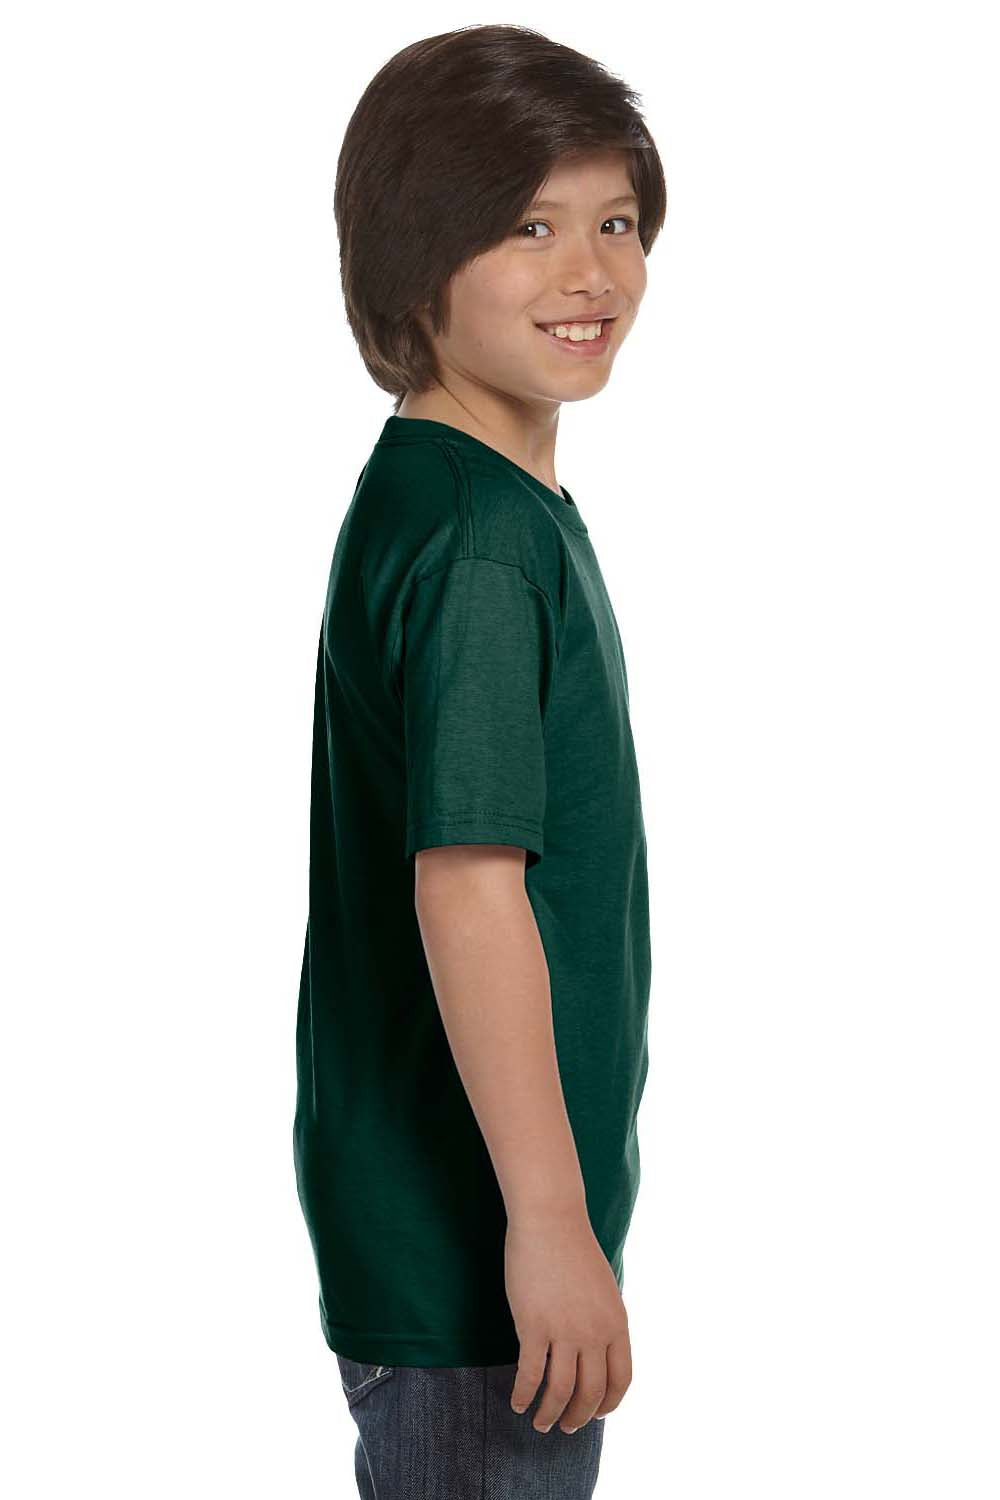 Gildan G800B Youth DryBlend Moisture Wicking Short Sleeve Crewneck T-Shirt Forest Green Side